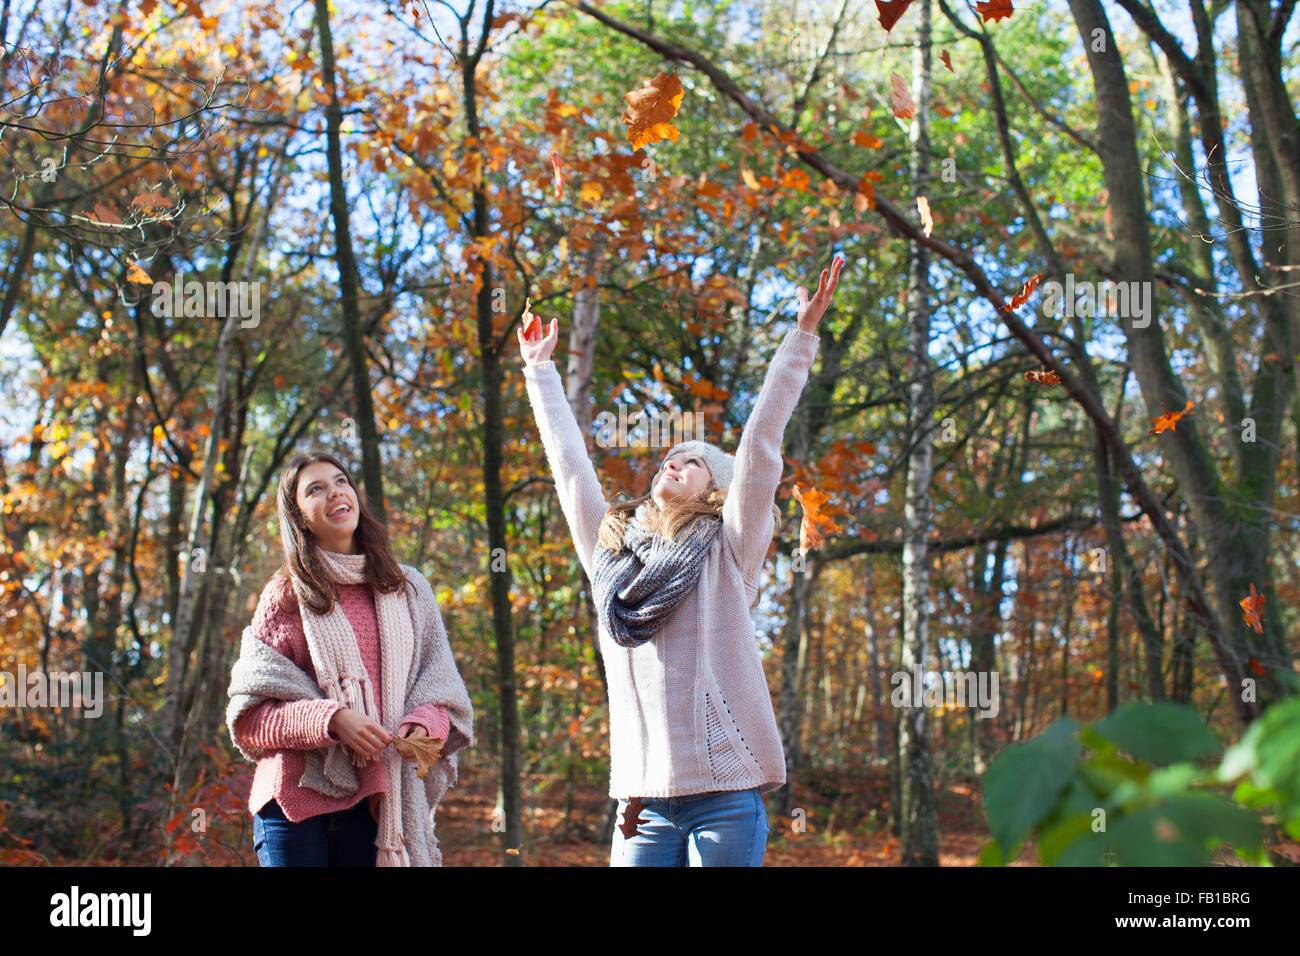 Le ragazze adolescenti nella foresta a braccia alzate gettando le foglie di autunno, cercando di sorridere Foto Stock